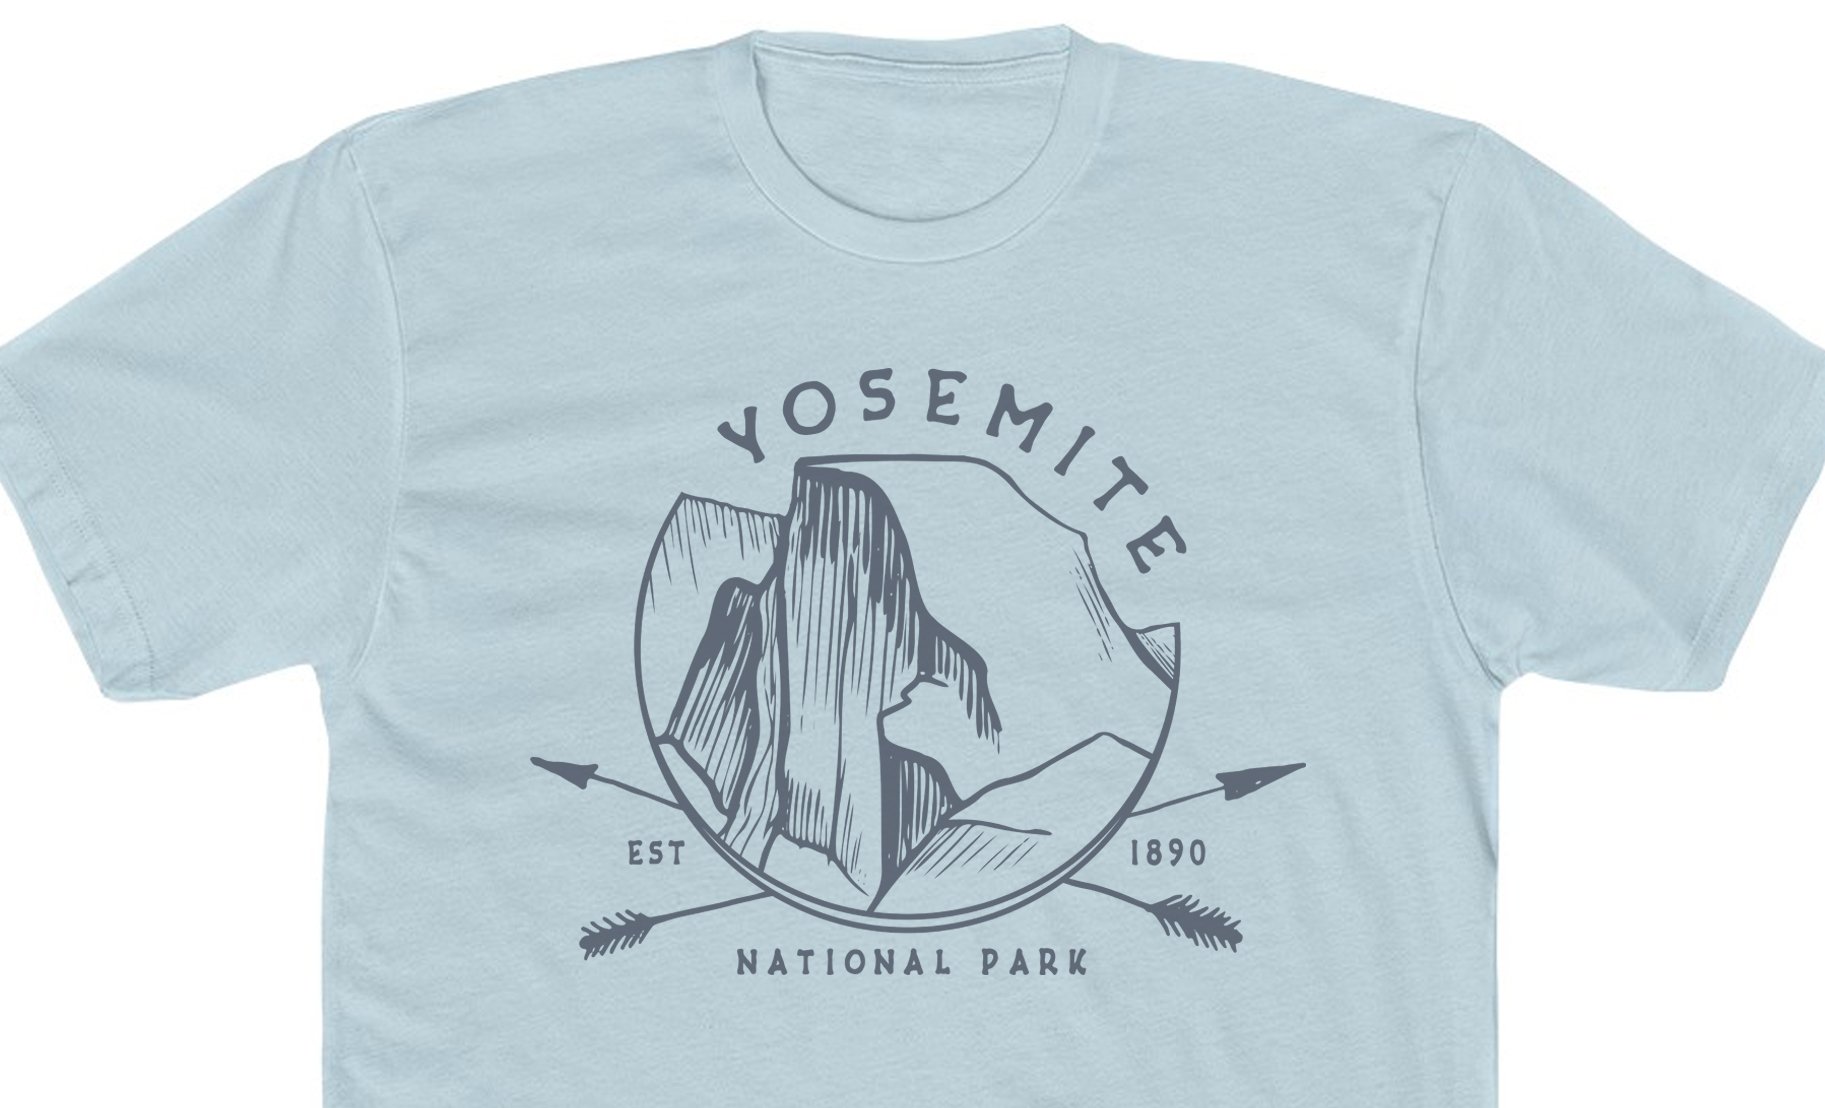 02-YosemiteNationalPark-Shirt-lightblue.jpg